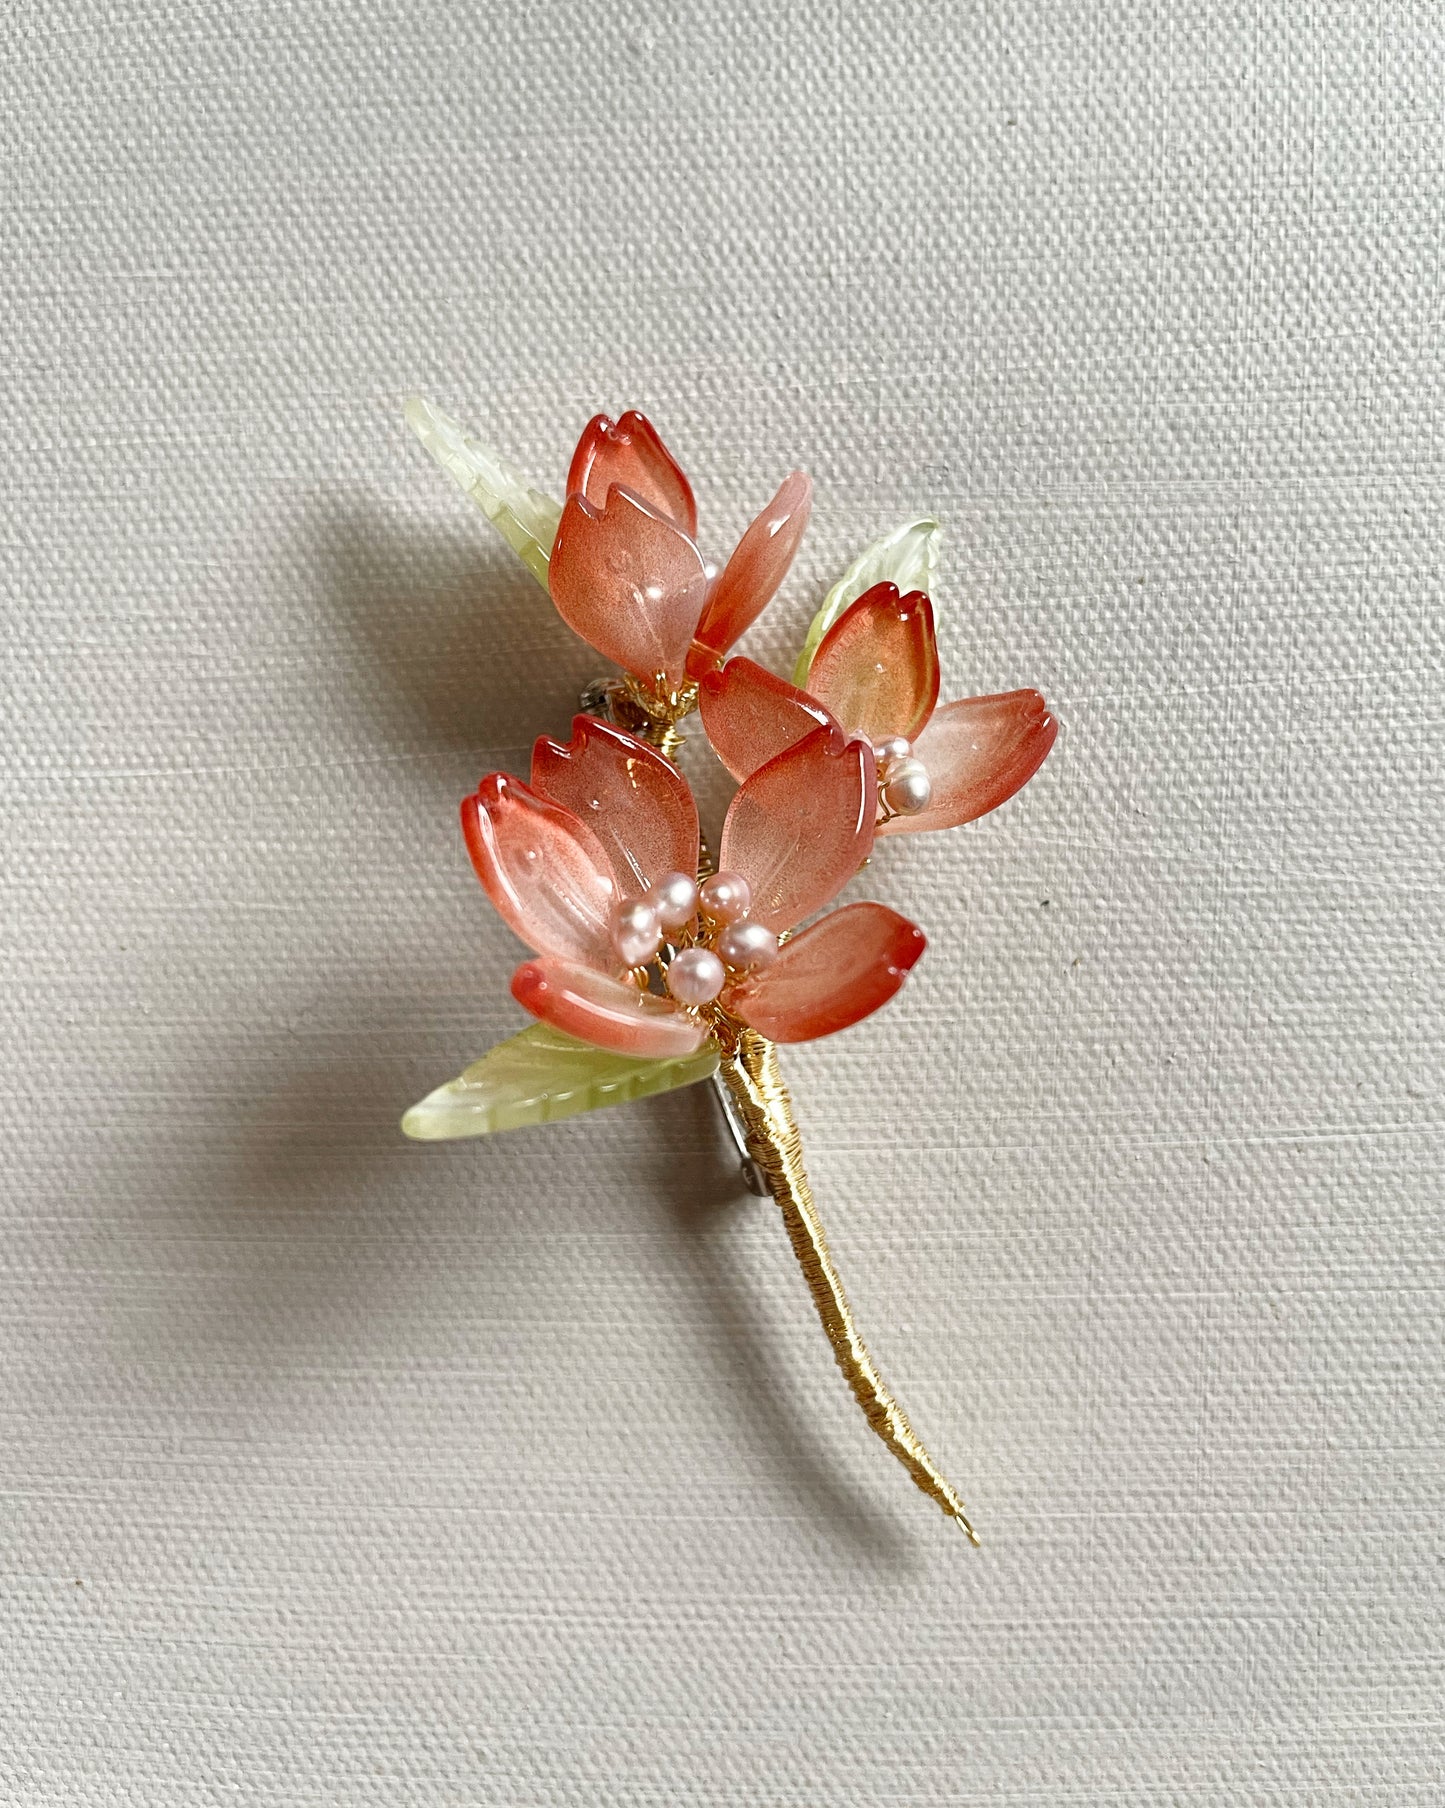 Someiyoshino sakura half opening bouquet brooch in blushing red